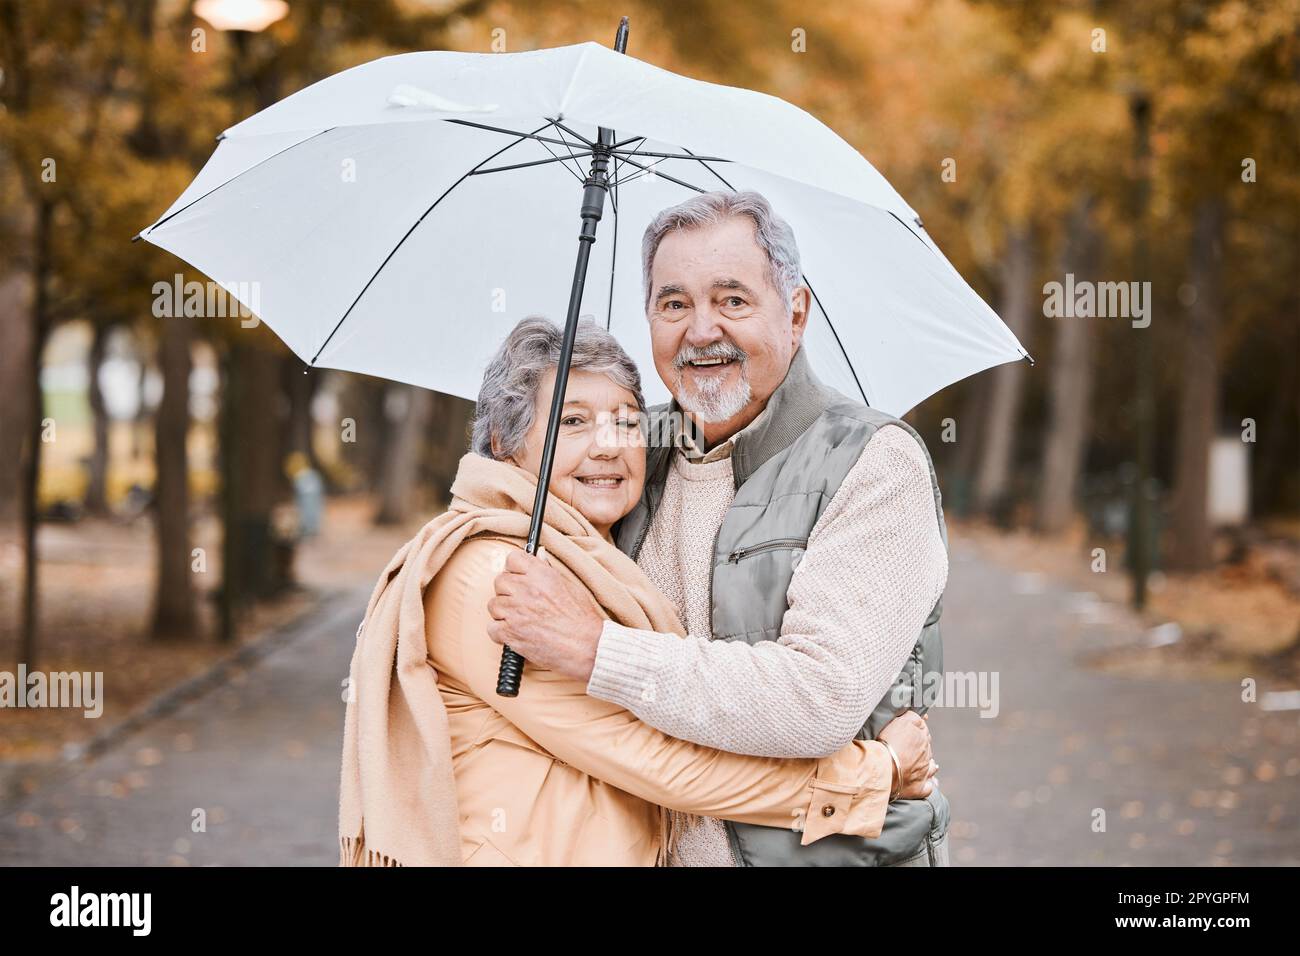 Hiver, câlin et couple aîné dans un parc, date de retraite et marche au Canada avec un parapluie. Nature affection, sourire et portrait d'un homme et d'une femme âgés en marche pour le bonheur et l'amour Banque D'Images